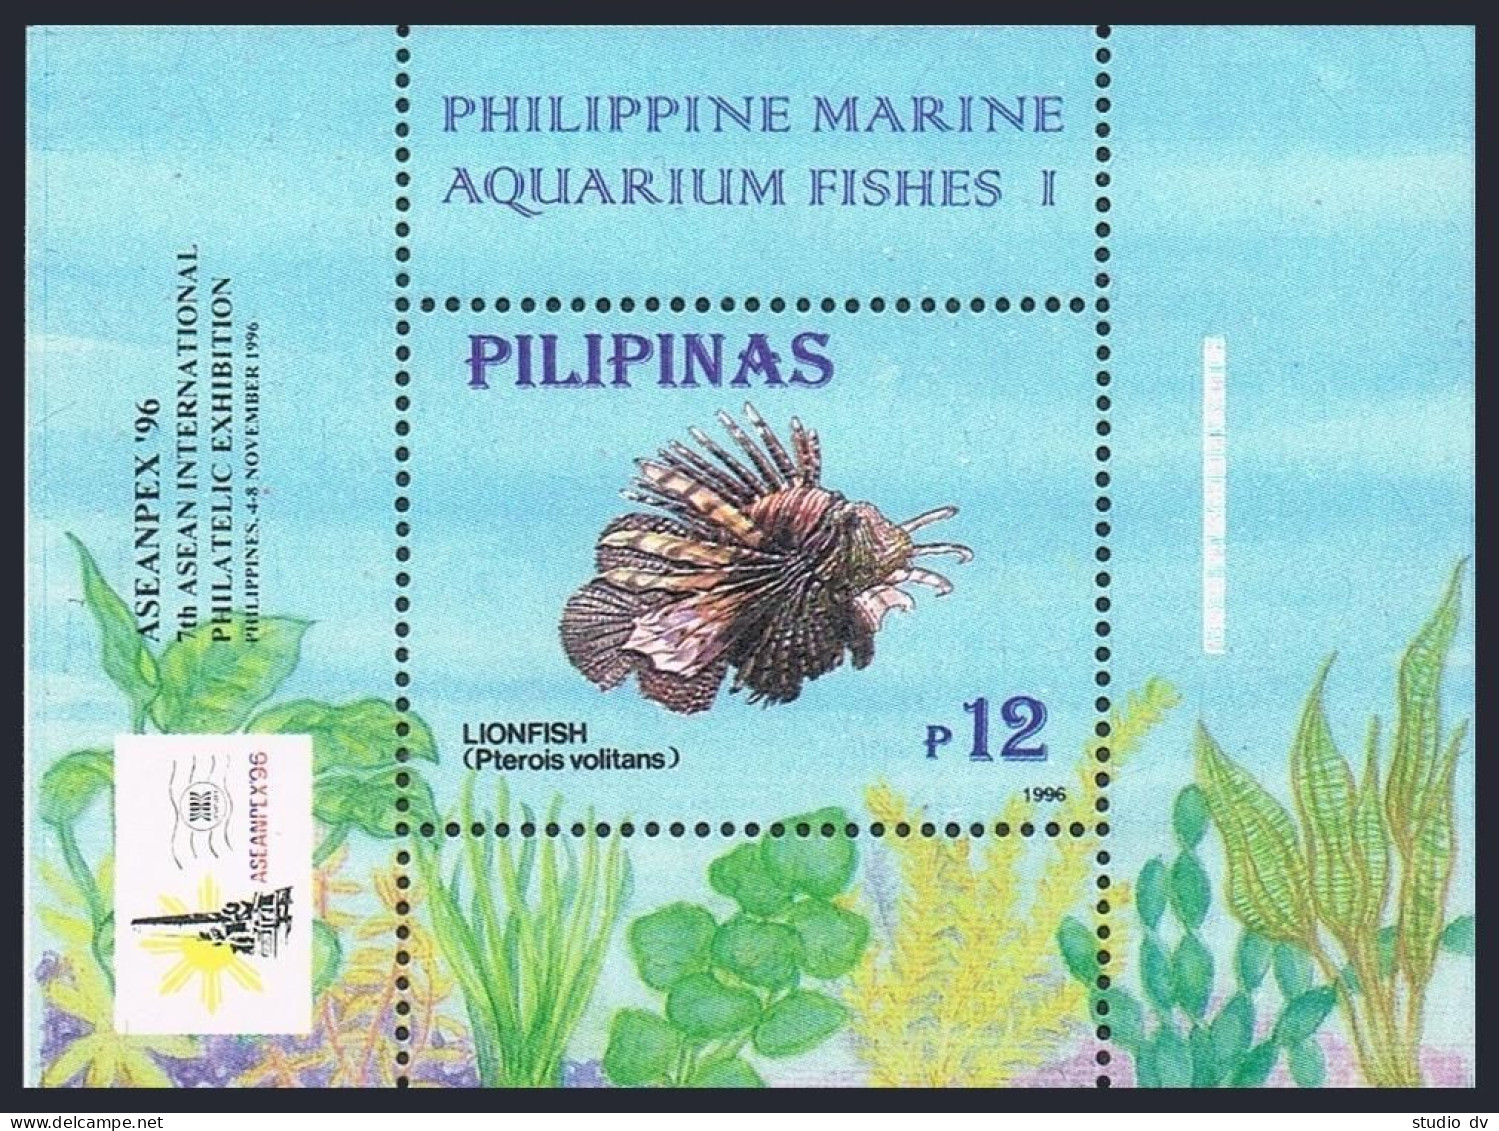 Philippines 2403-2404 Sheets, MNH. ASEANPEX-1996. Marine Aquarium Fish. - Filippine